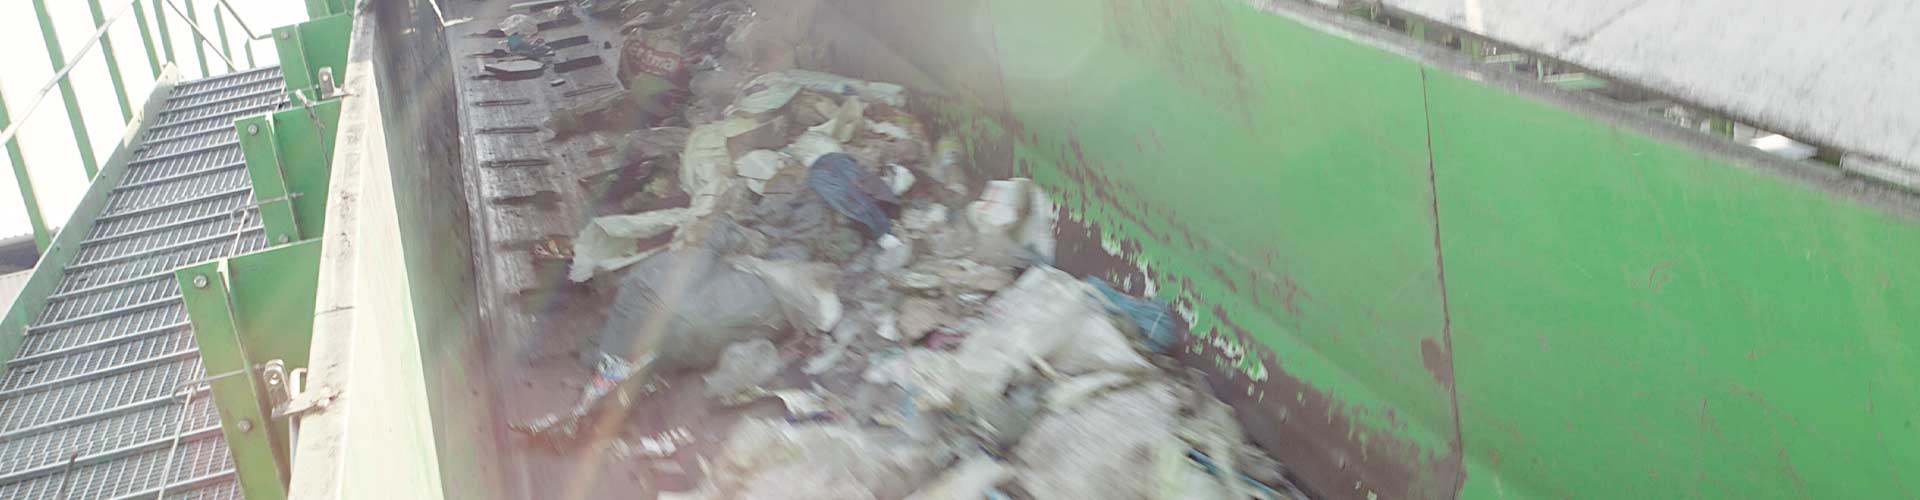 Abfall vor der Mülltrennung